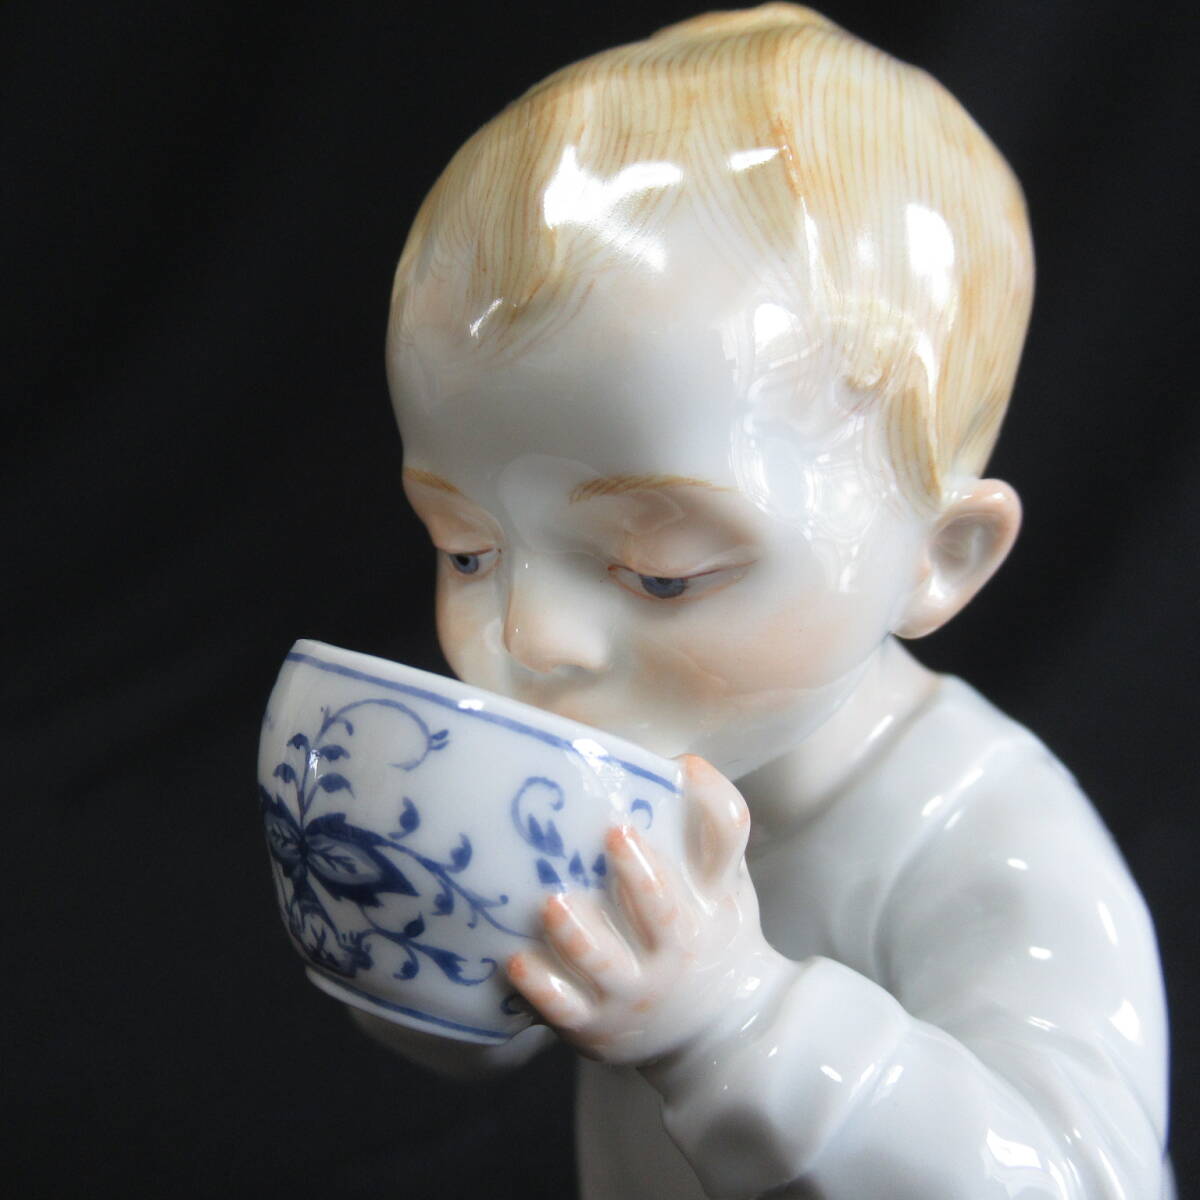 マイセン ヘンチェル人形 ブルーオニオンのカップを持った男の子 フィギュリン Meissen アンティーク 60サイズ発送 w-2607932-127-mrrzの画像6